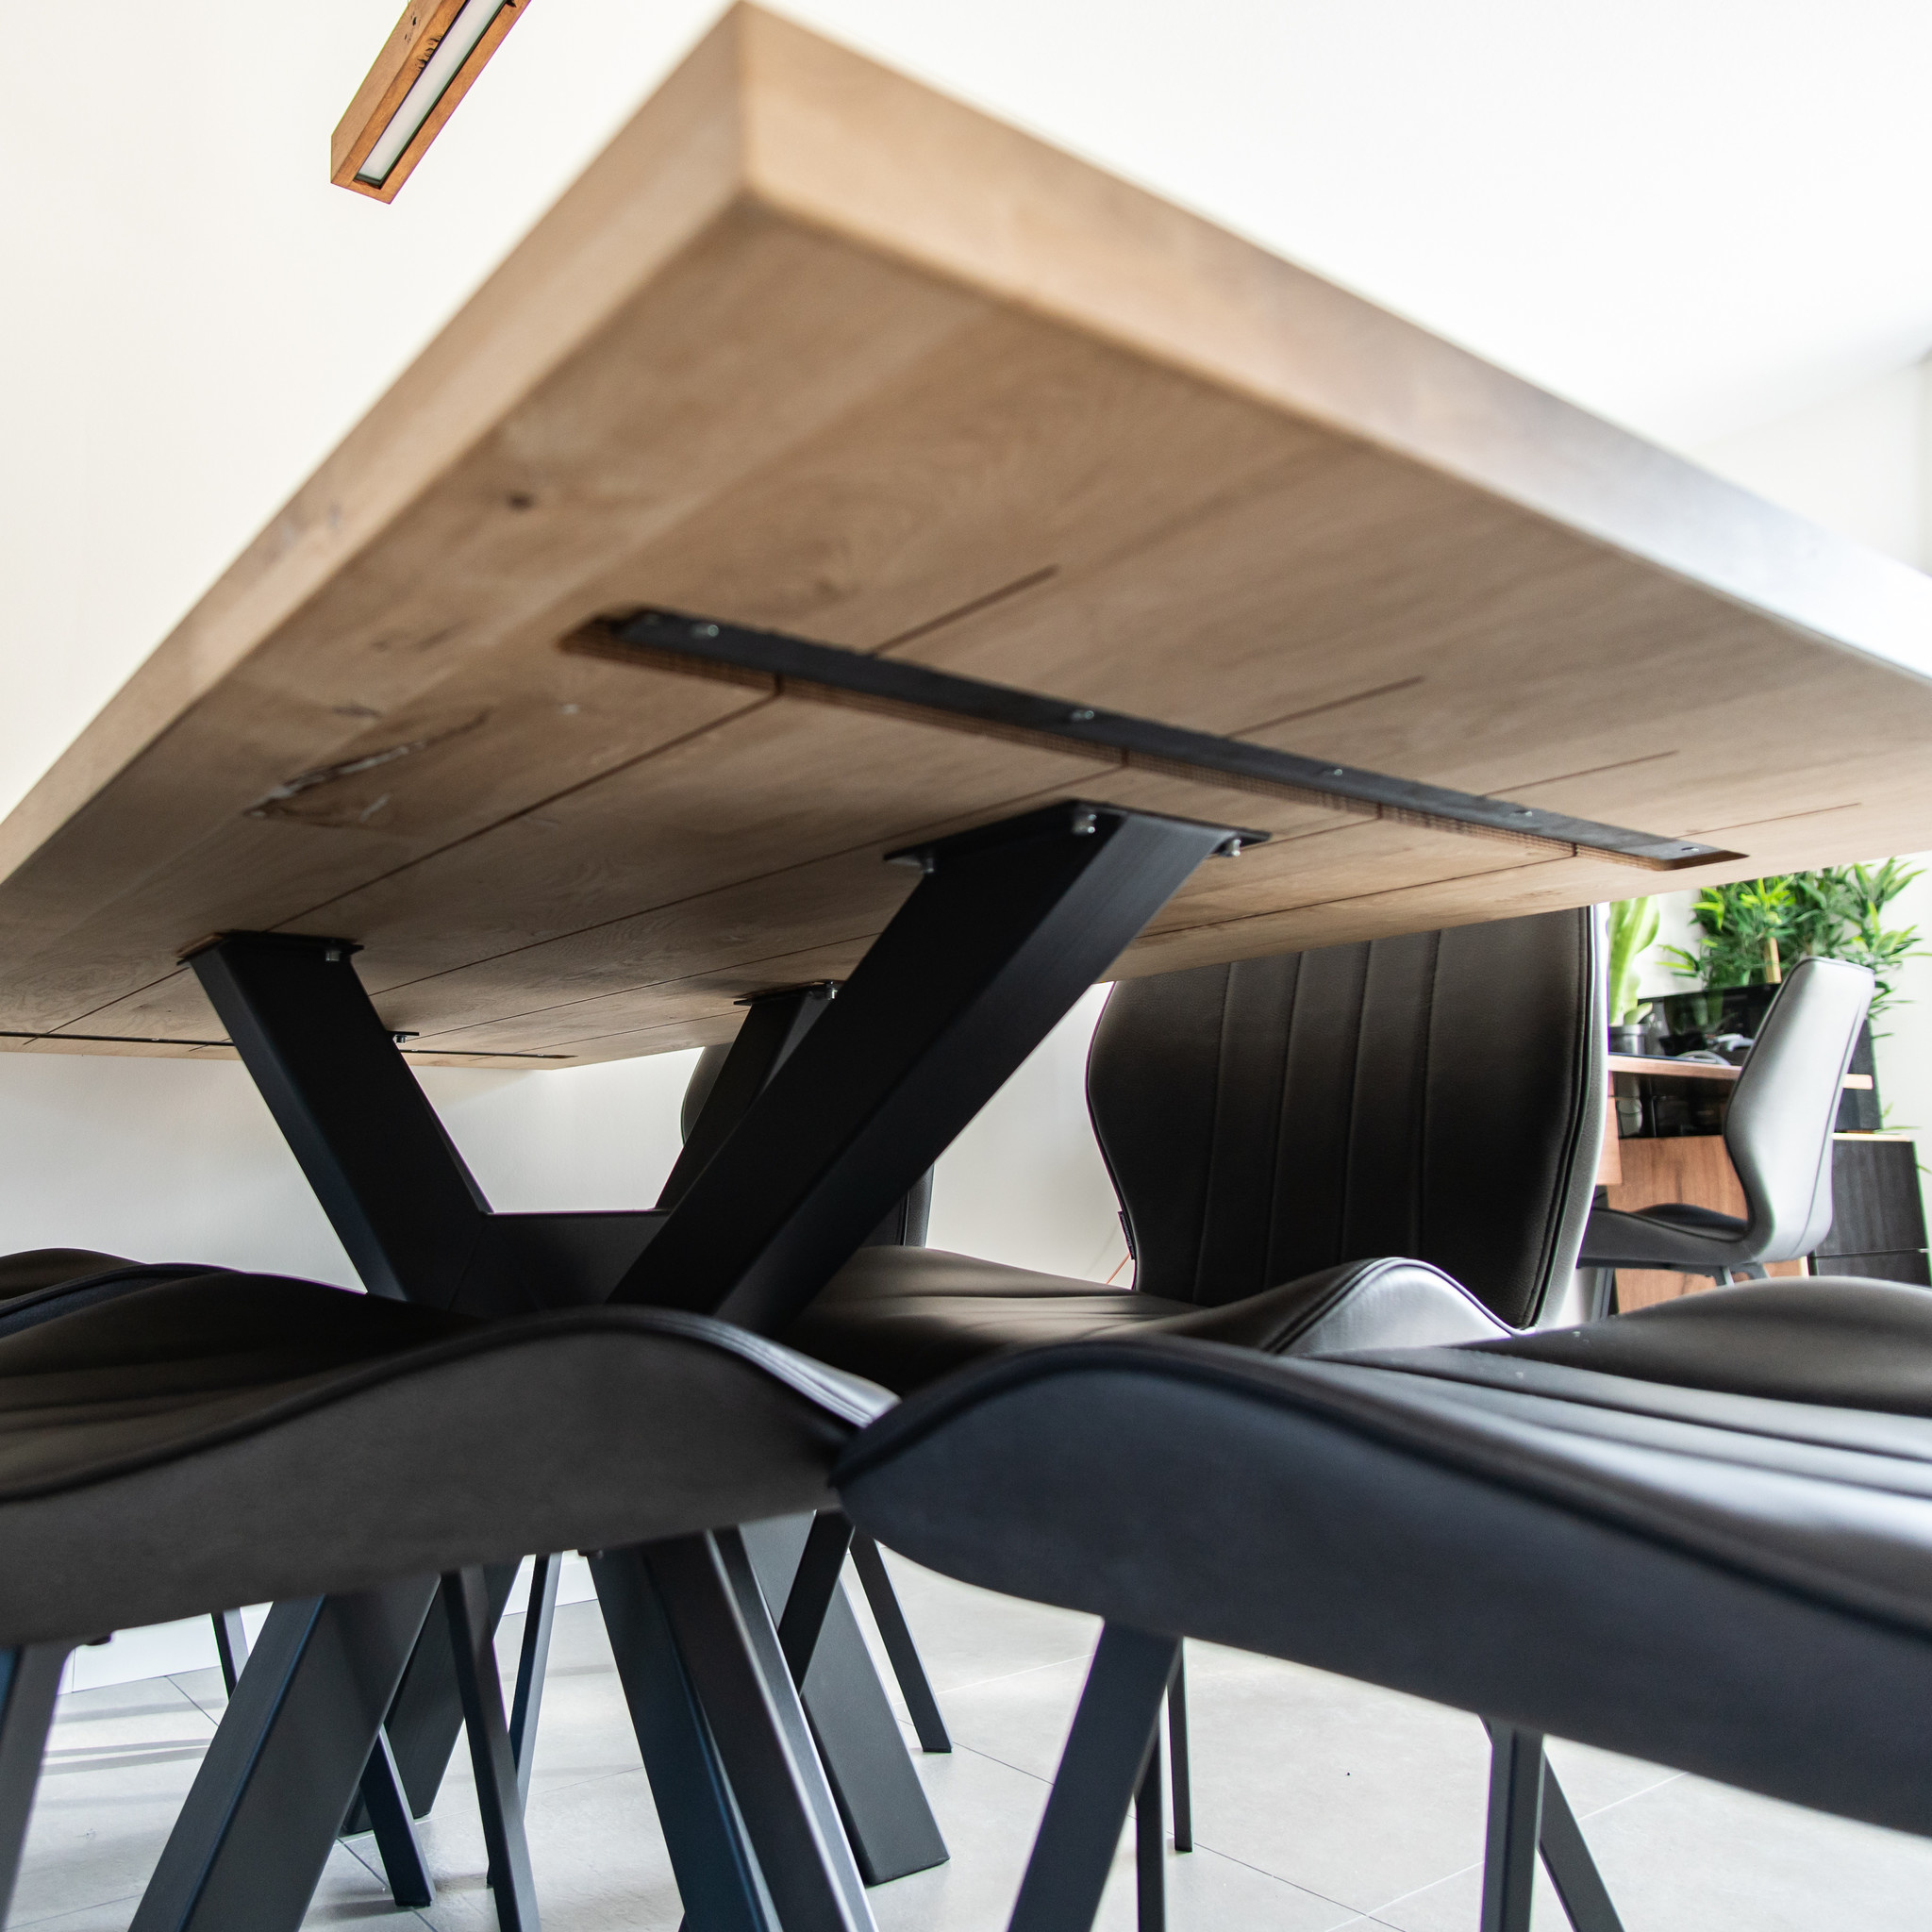  Tischplatte Eiche nach Maß - 4 cm dick (2-lagig) - Eichenholz rustikal - Eiche Tischplatte massiv - verleimt & künstlich getrocknet (HF 8-12%) - 50-120x50-350 cm